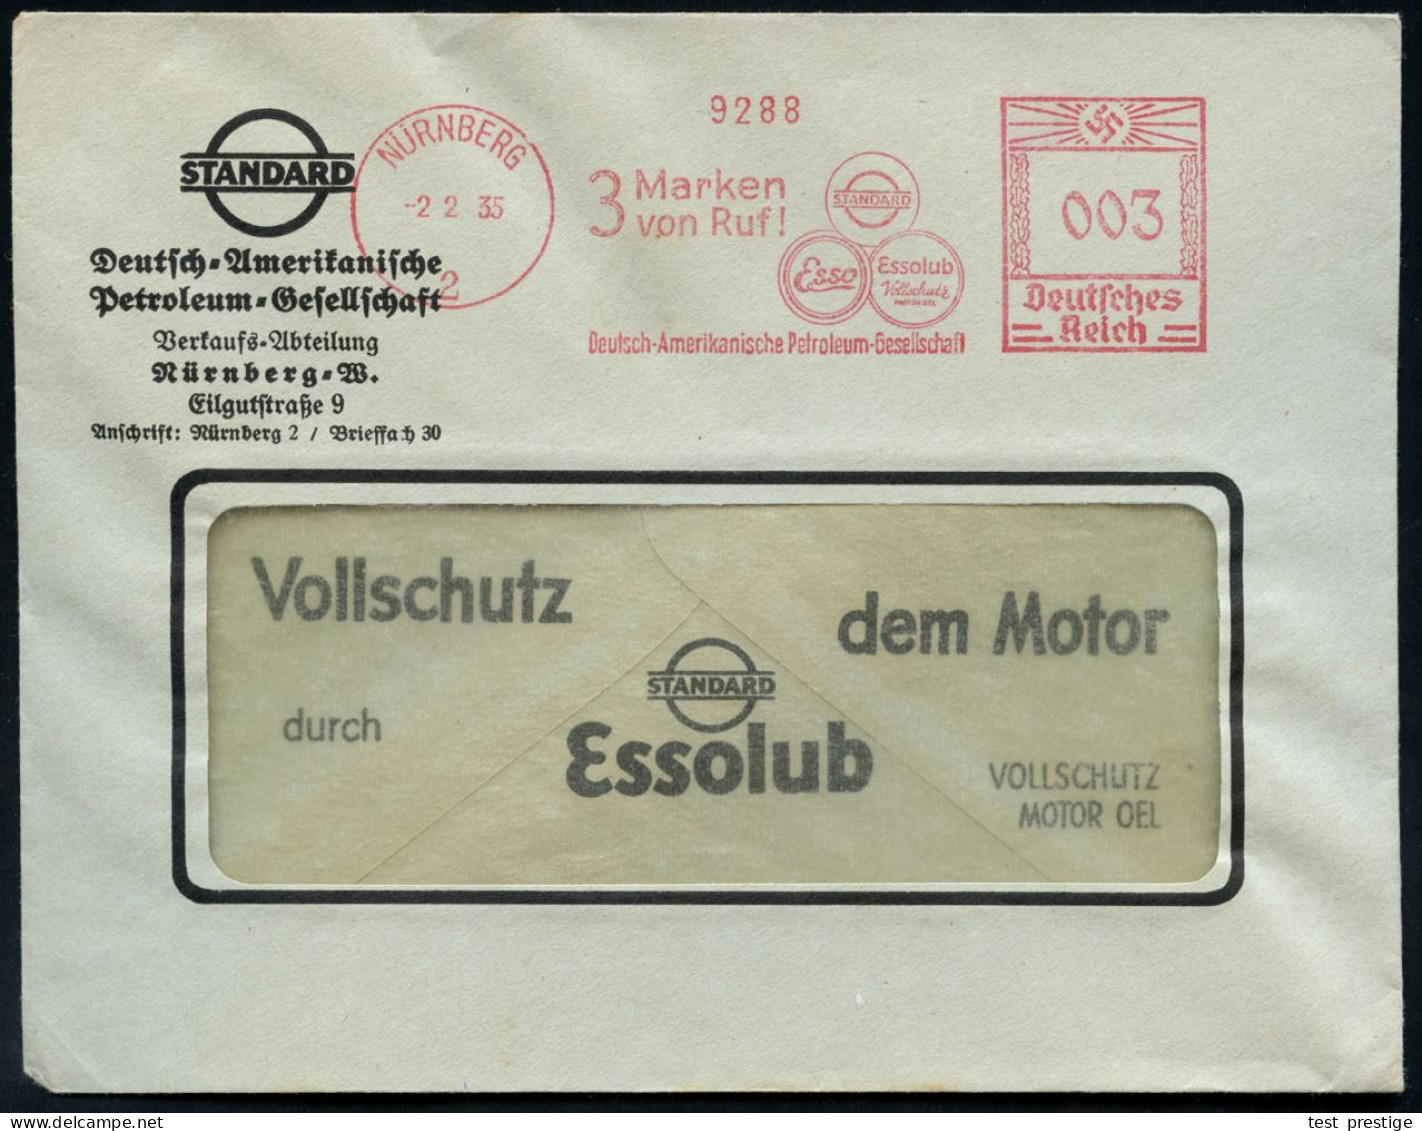 NÜRNBERG/ 2/ 3 Marken/ Von Ruf!/ STANDARD/ Esso/ Essolub/ Deutsch-Amerikanische Petroleum-Ges. 1935 (2.2.) AFS Francotyp - Oil